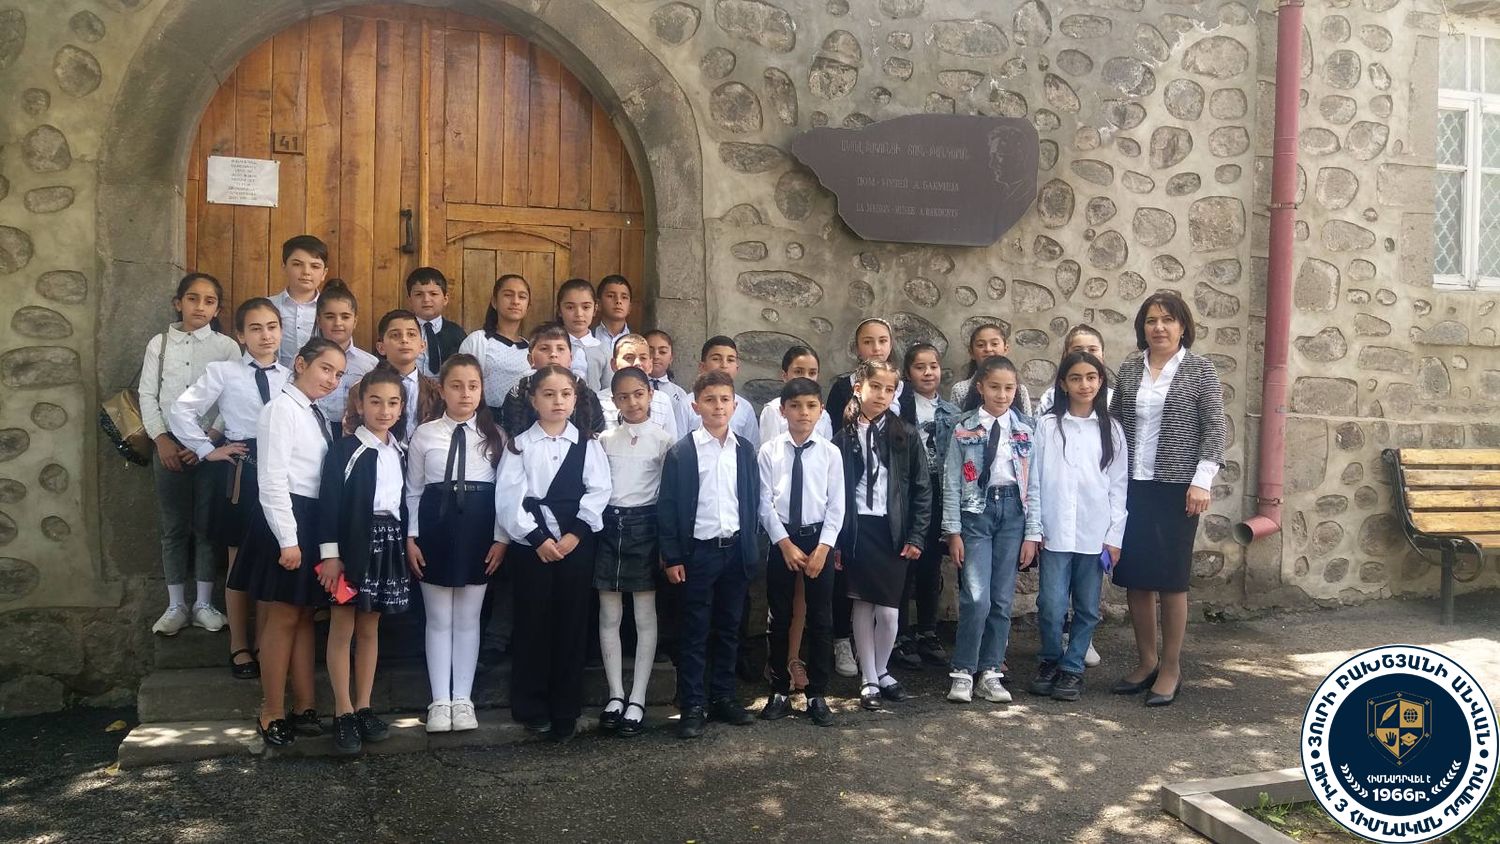 Գորիսի Յու. Բախշյանի անվան թիվ 3 հիմնական դպրոցի աշակերտներն այցելեցին Ակսել Բակունցի տուն-թանգարան